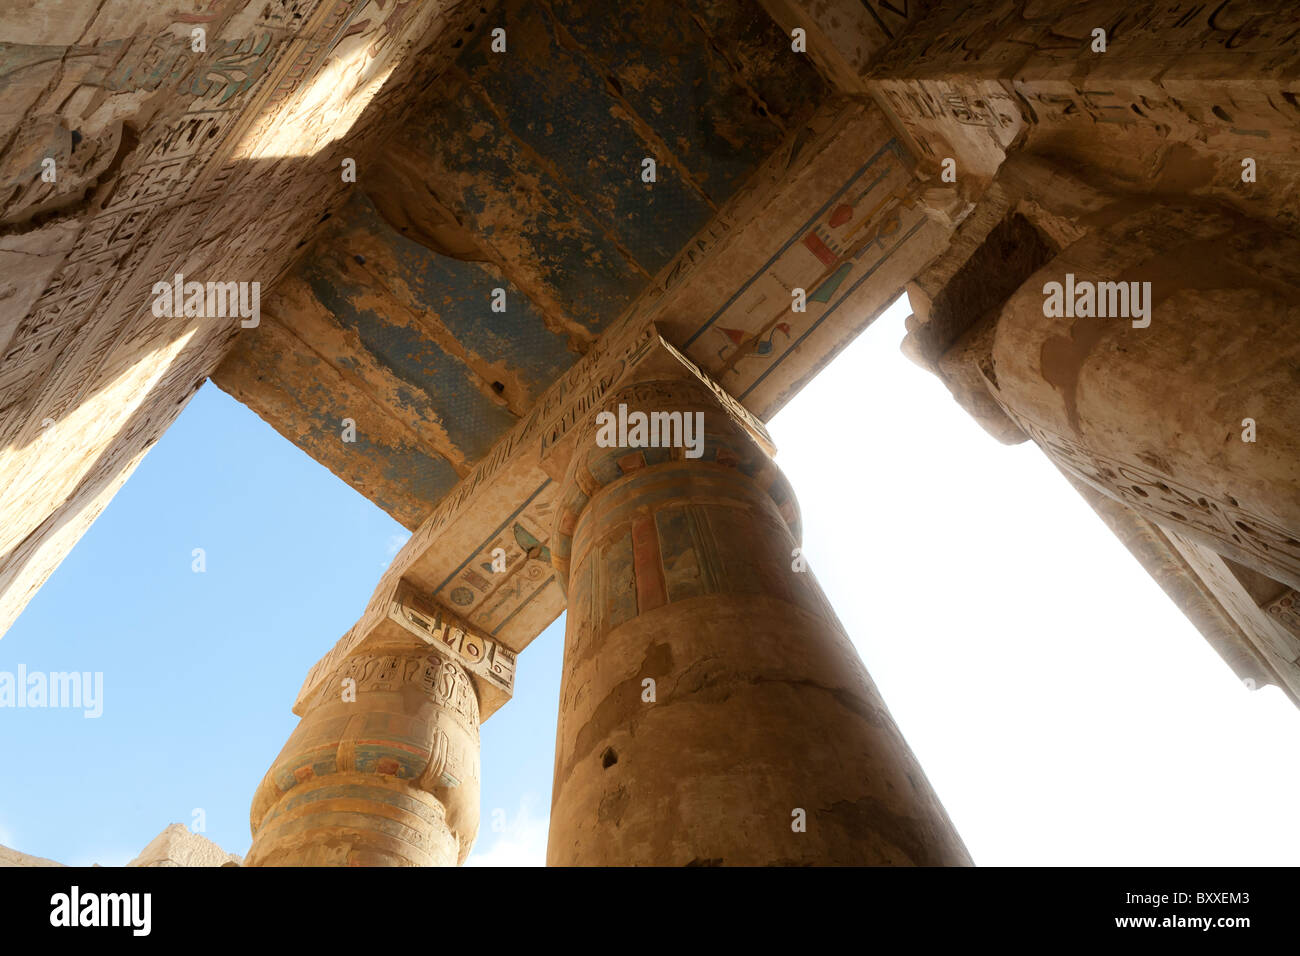 Portikus am Westufer des Nil, Luxor, Ägypten, Medinet Habu, Leichenhalle Tempel von Ramses III Stockfoto